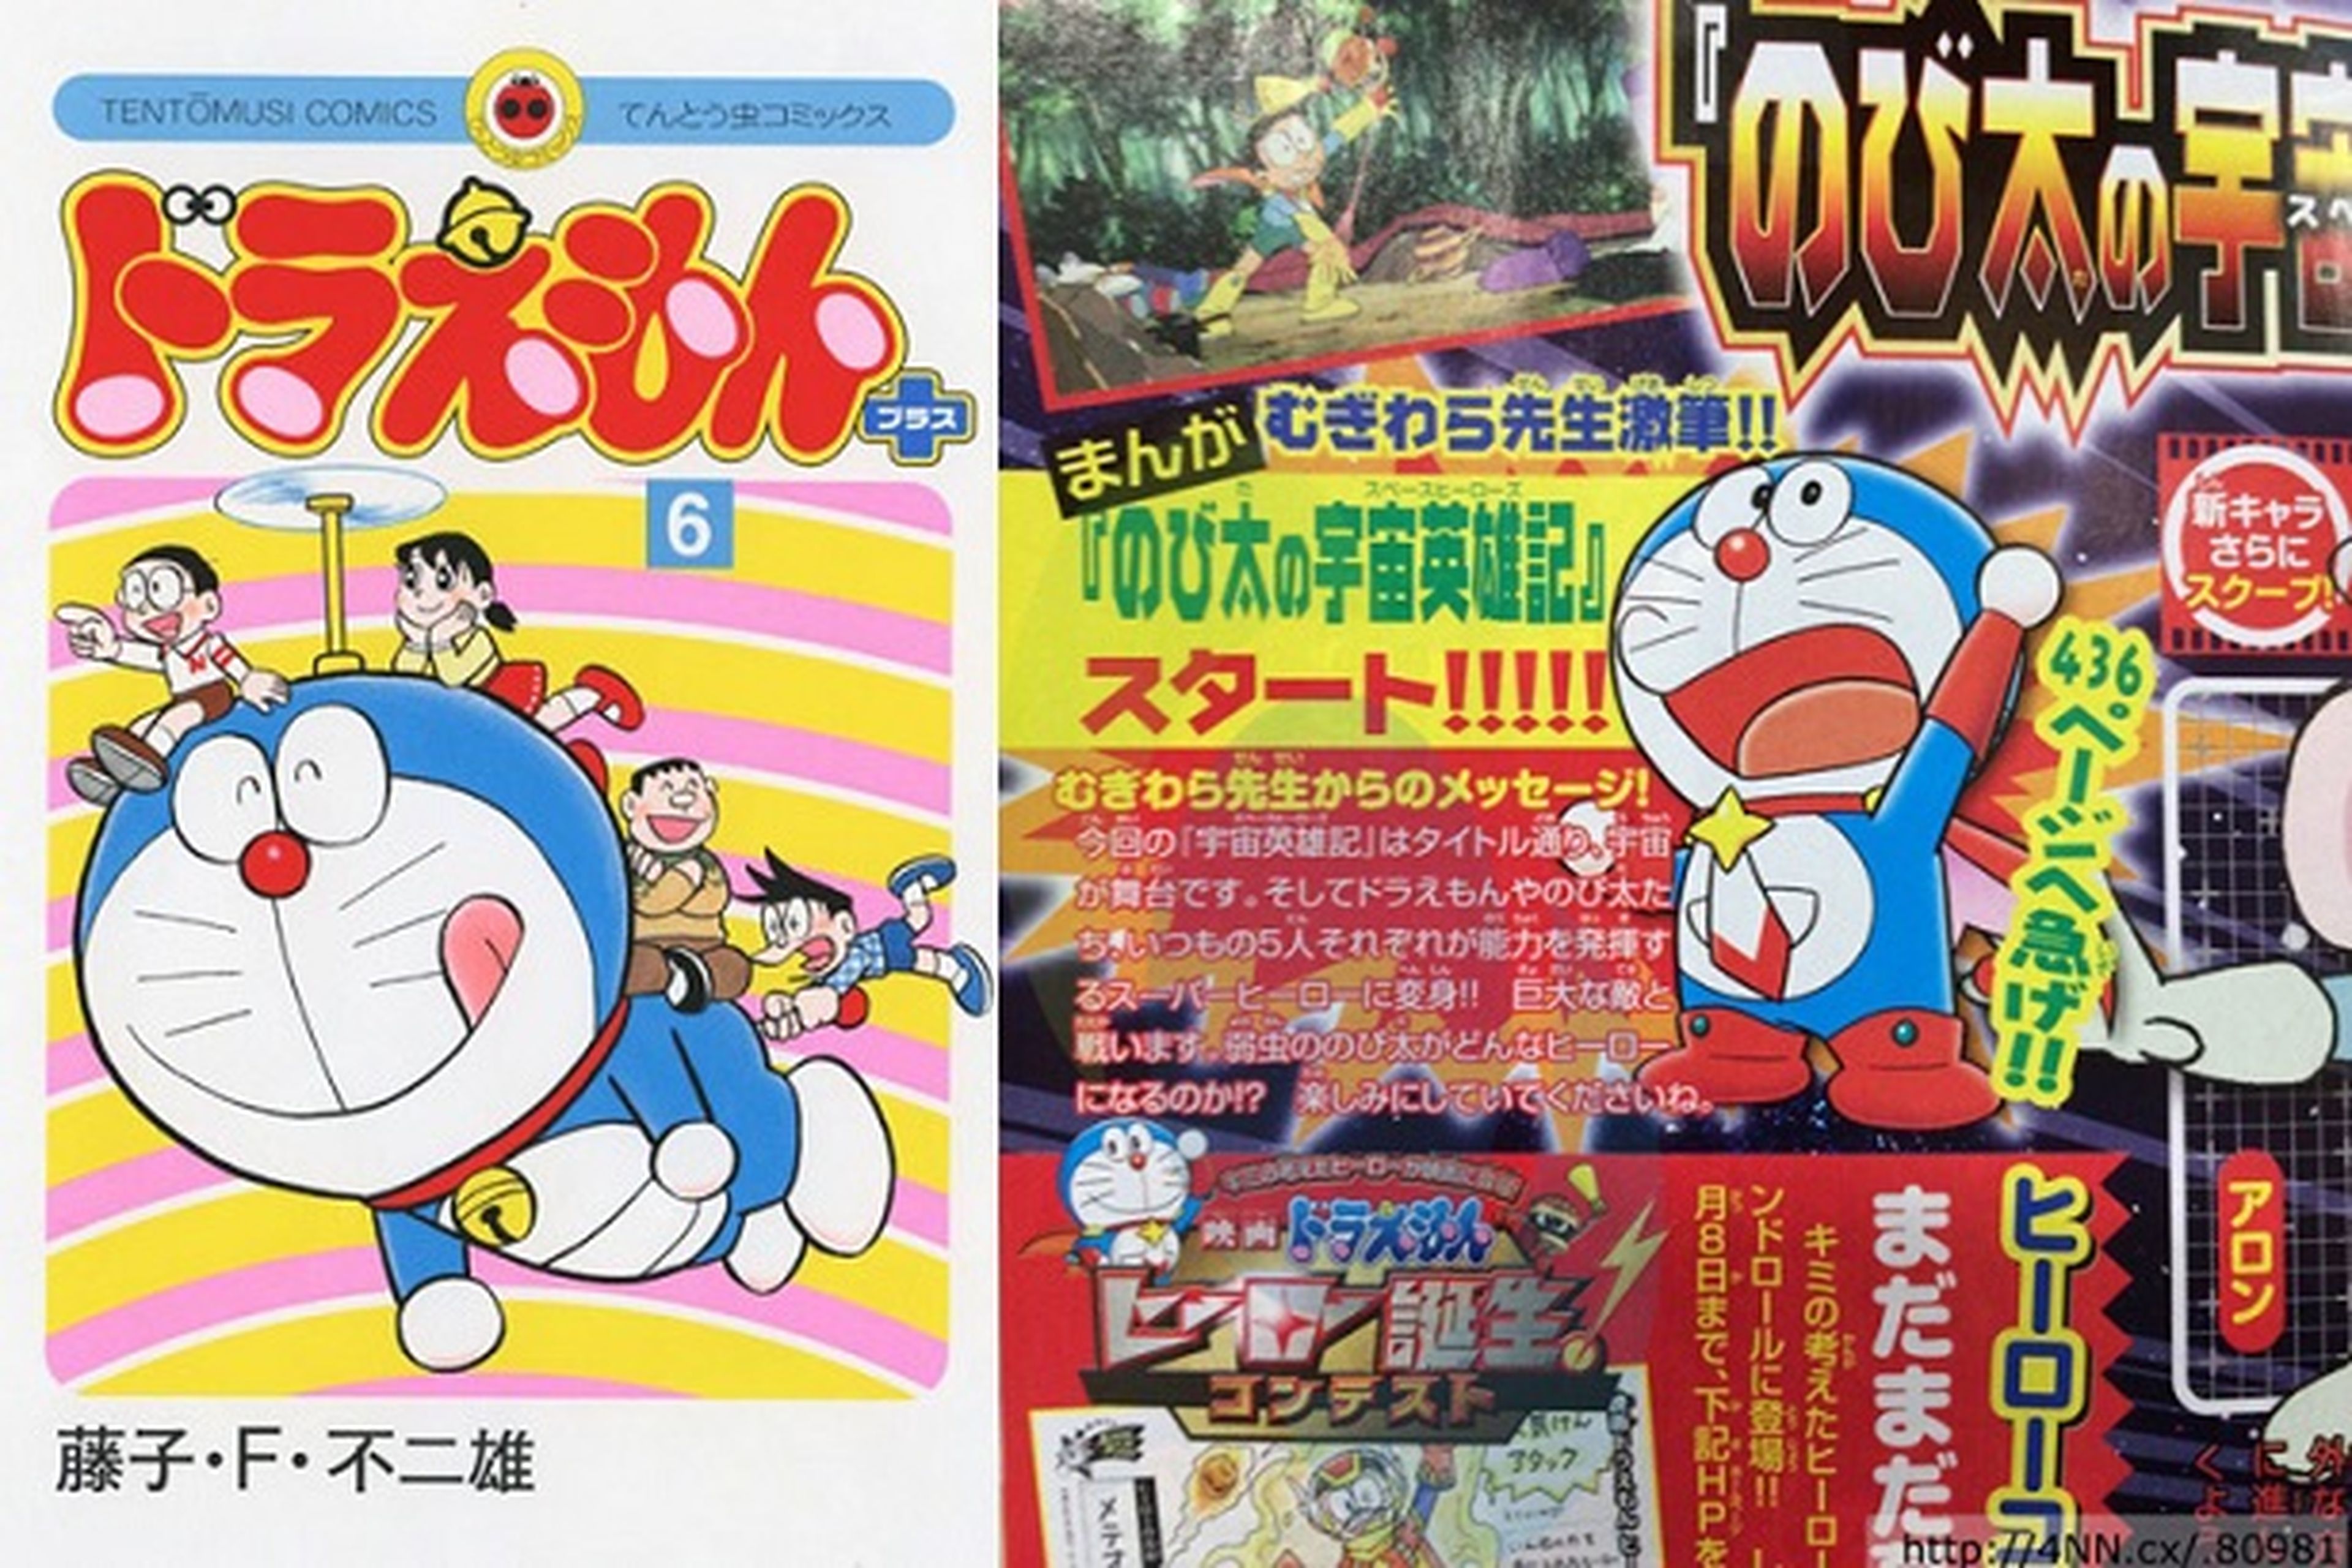 Nuevo tomo de Doraemon tras 8 años de sequía